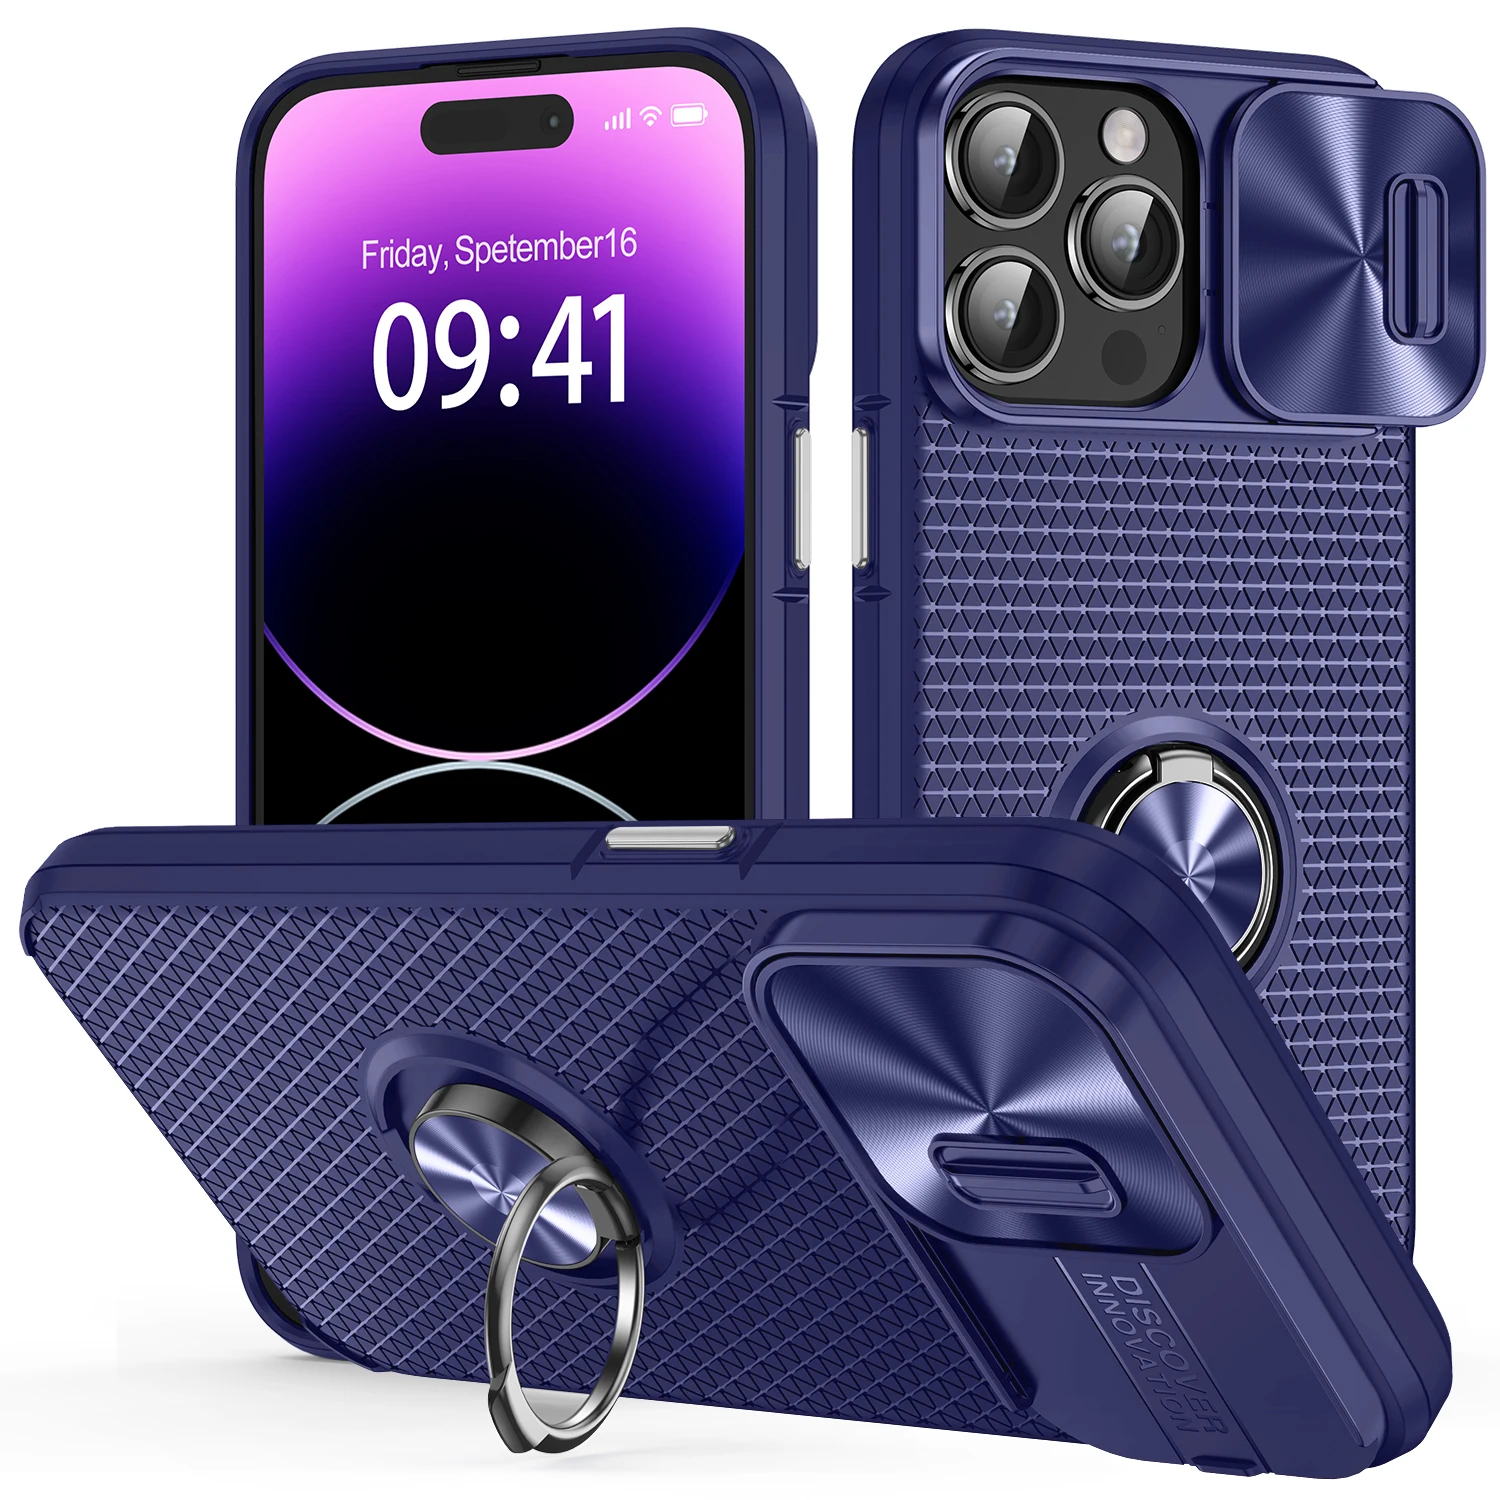  Funda protectora para iPhone 11 Pro Max, 360 de cuerpo  completo, resistente, resistente a los golpes, carcasa de aleación de  aluminio con protector de pantalla integrado de silicona para iPhone 11